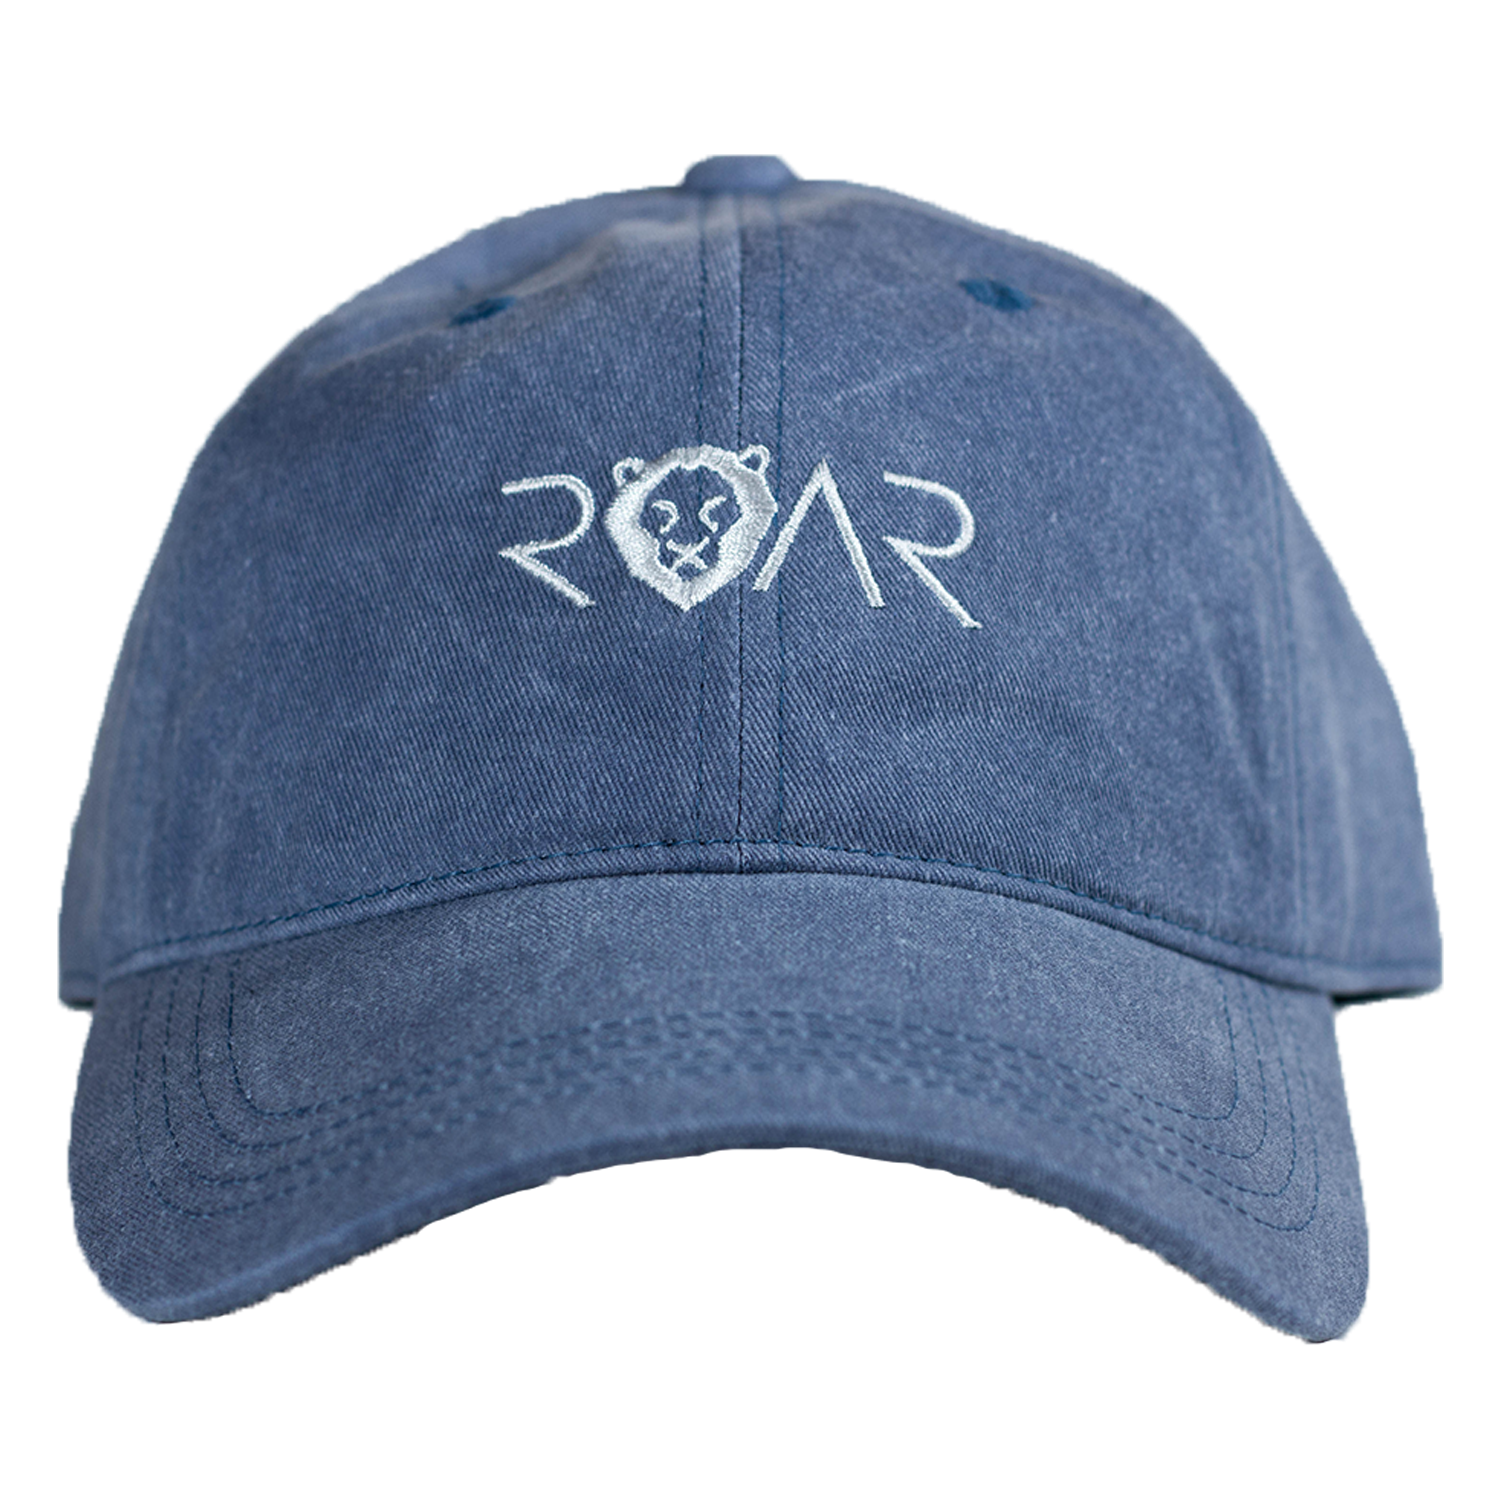 ROAR DAD HAT - BLUE/WHITE